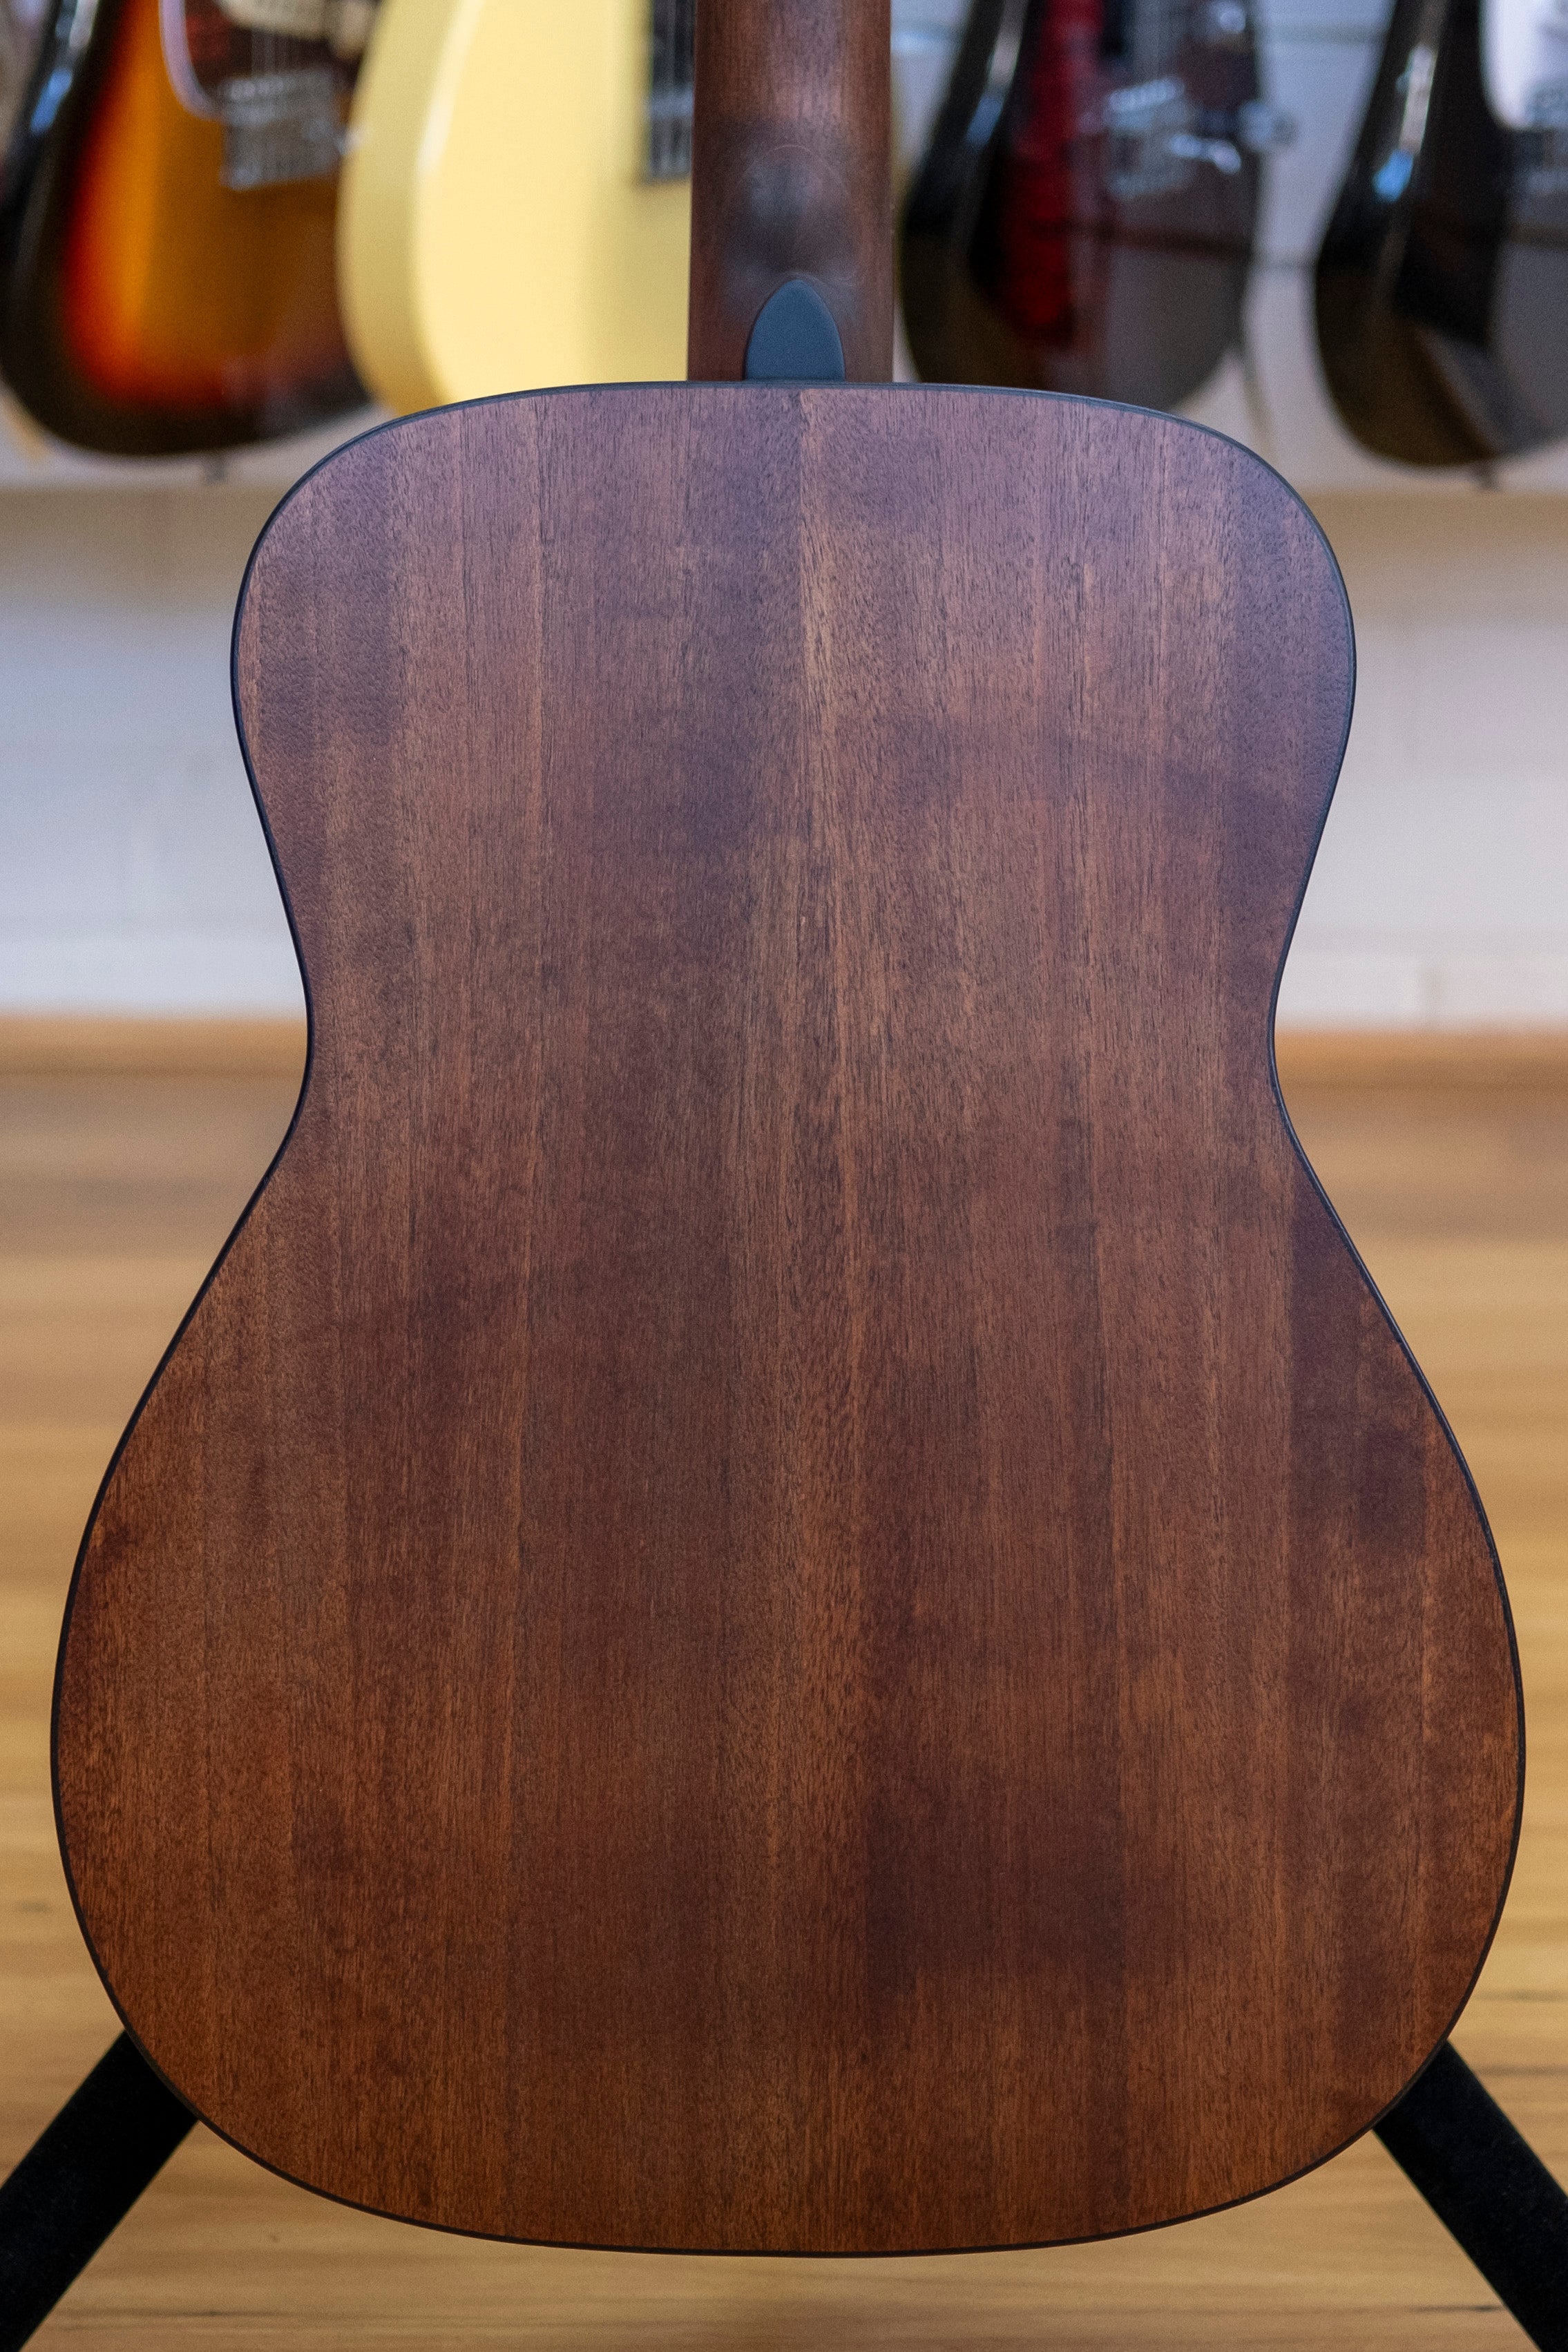 Cort Standard Series AF510 Acoustic Guitar with Gig Bag